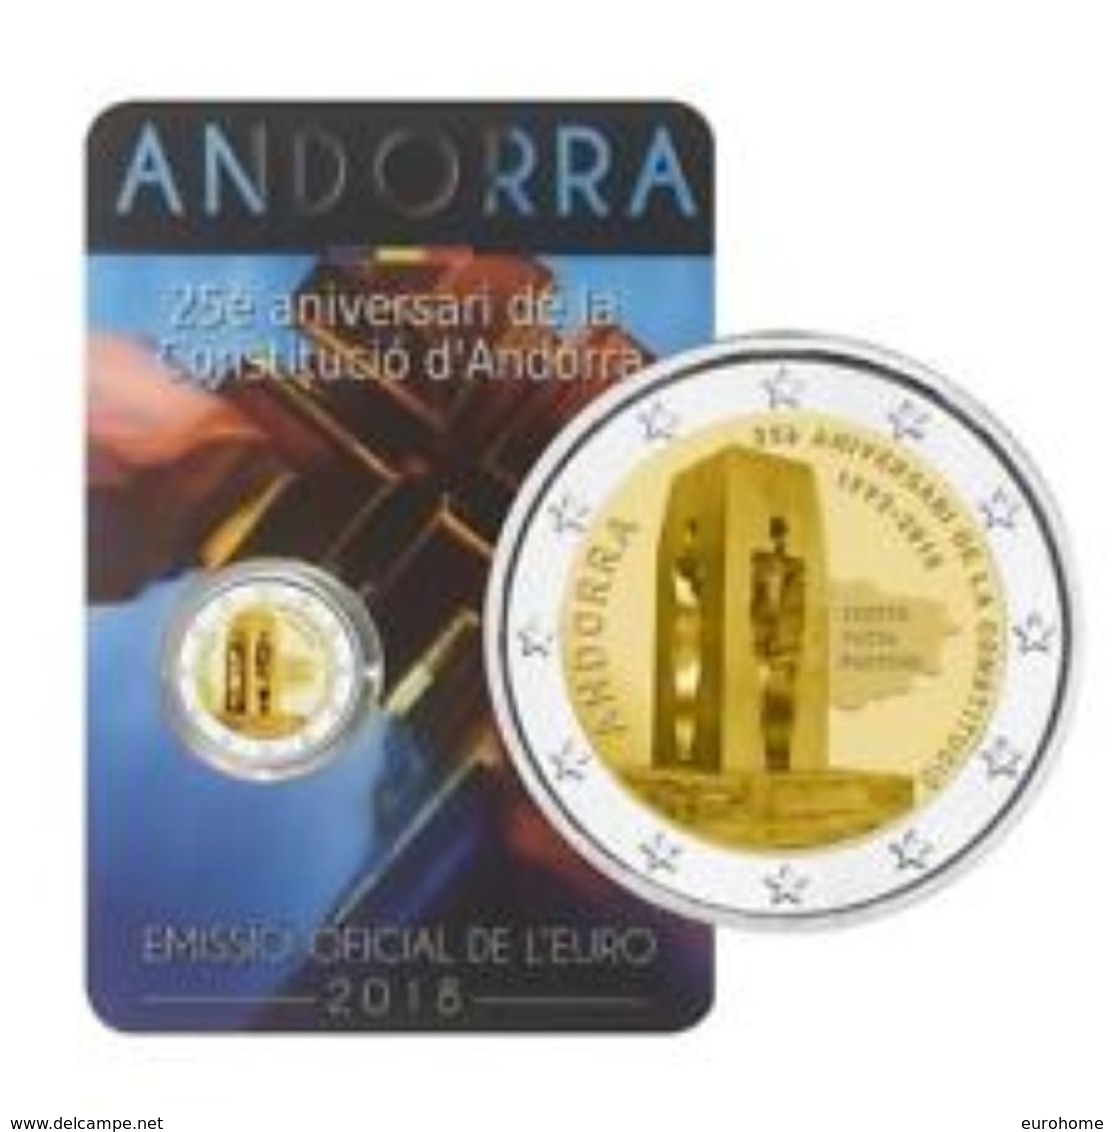 Andorra 2018    2 Euro Commemo  25 Jaar Grondwet (constitution) Van Andorra     UNC Uit De Coincard  !! - Andorre